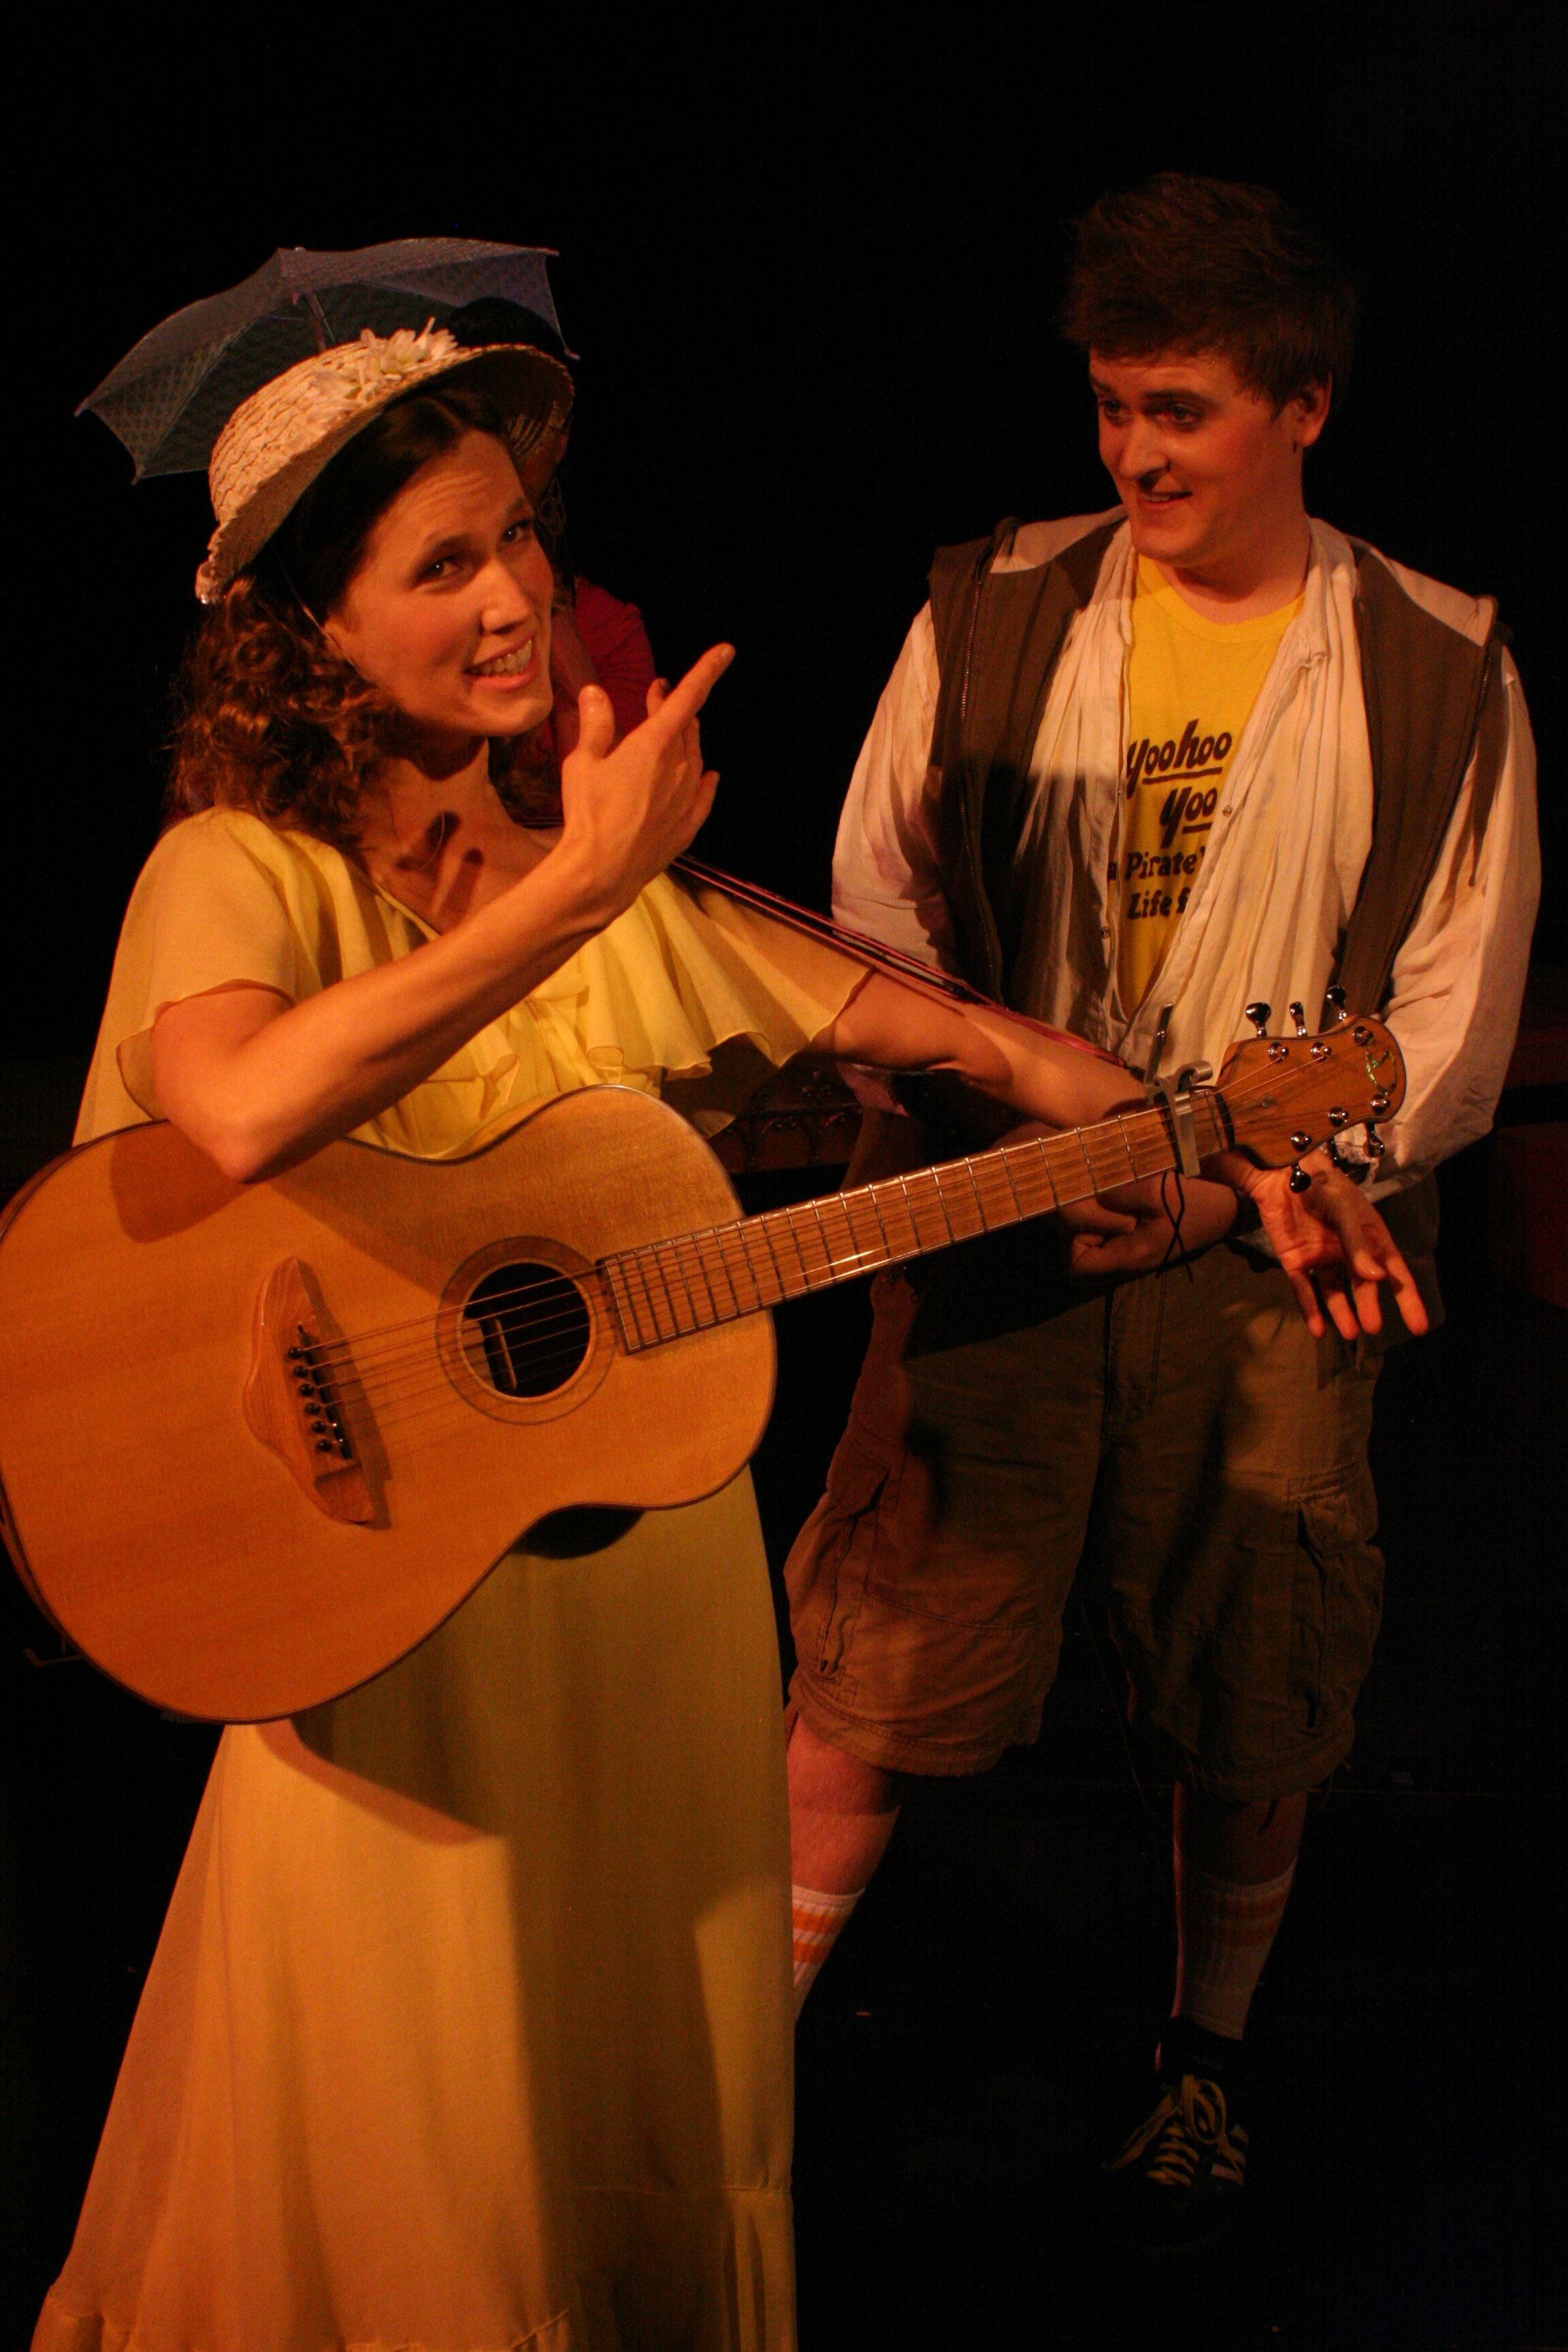 Arwen Dewey as Mabel and Jordan Melin as Frederic